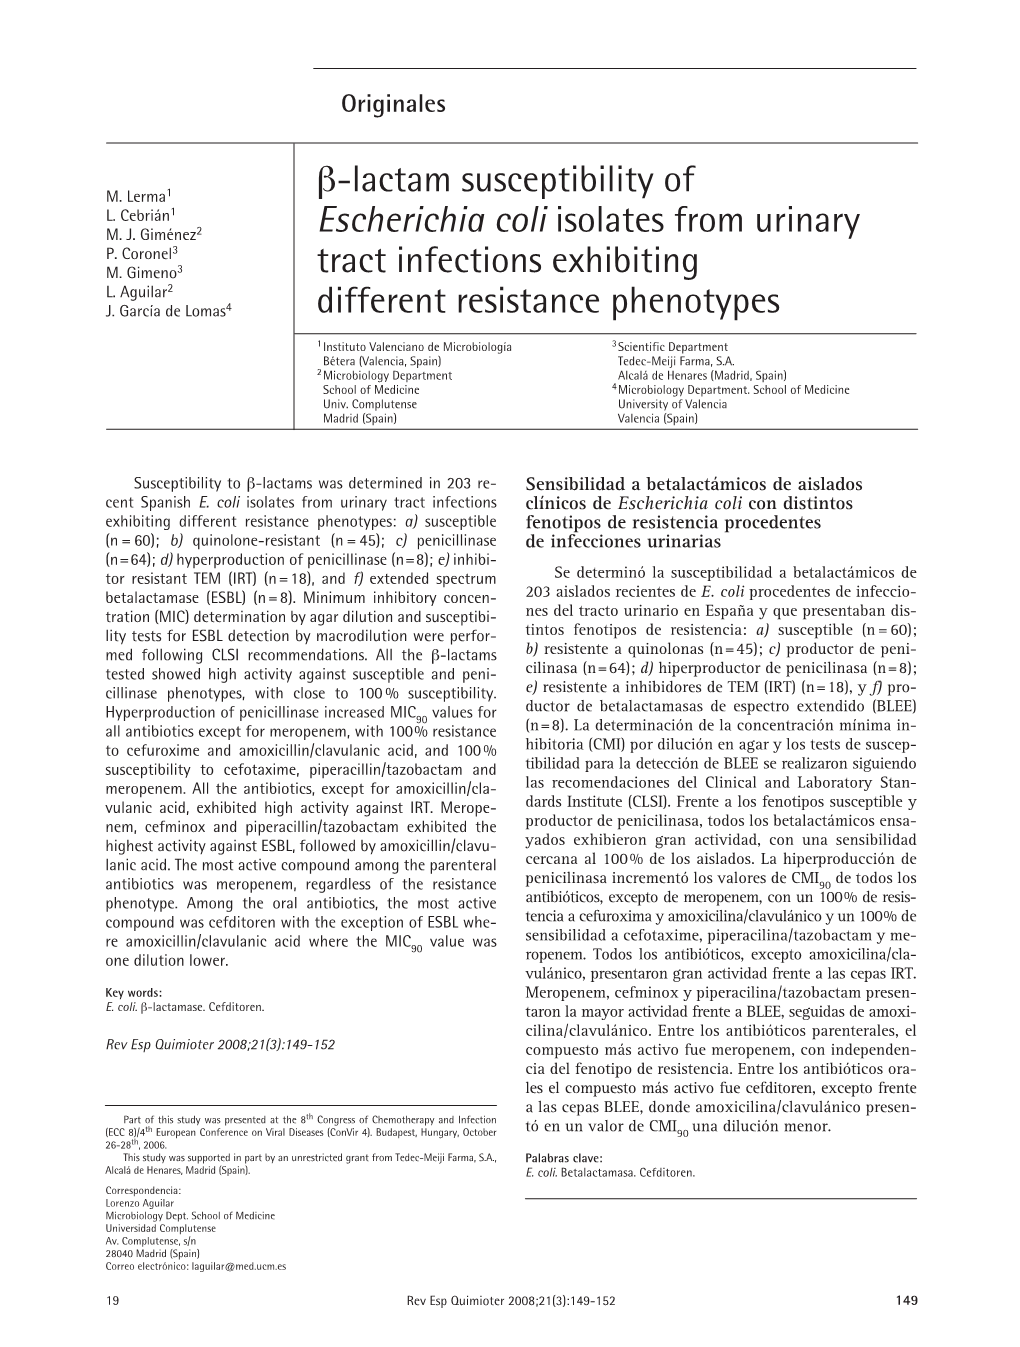 Β-Lactam Susceptibility of Escherichia Coli Isolates from Urinary Tract Infections Exhibiting Different Resistance Phenotypes